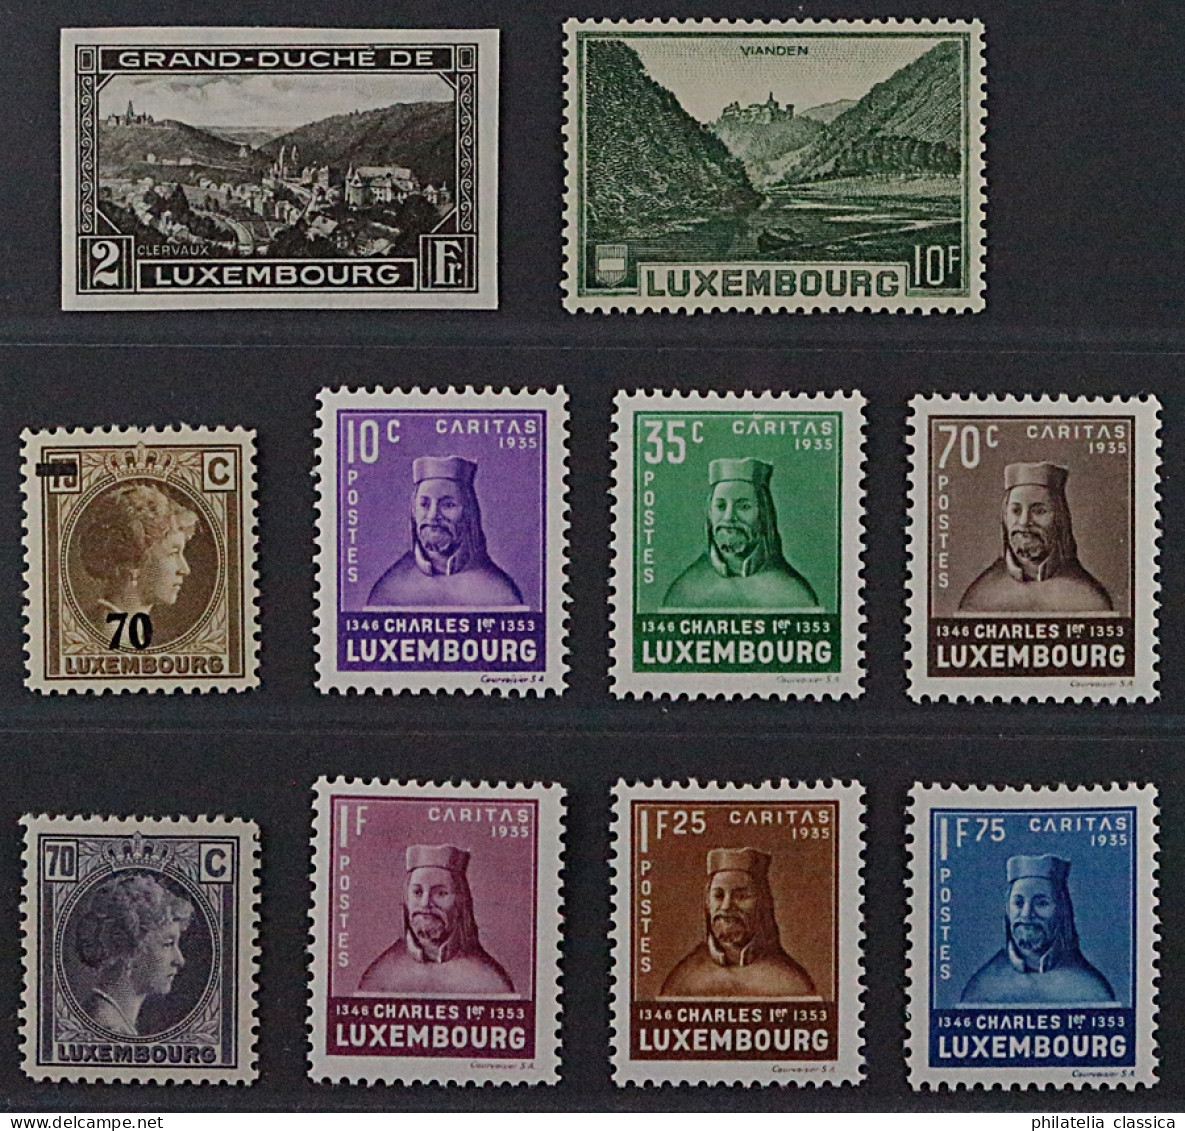 Luxemburg  265, 281-89 ** Gesuchte Serien Komplett, Postfrisch, KW 174,- € - 1852 Guillaume III